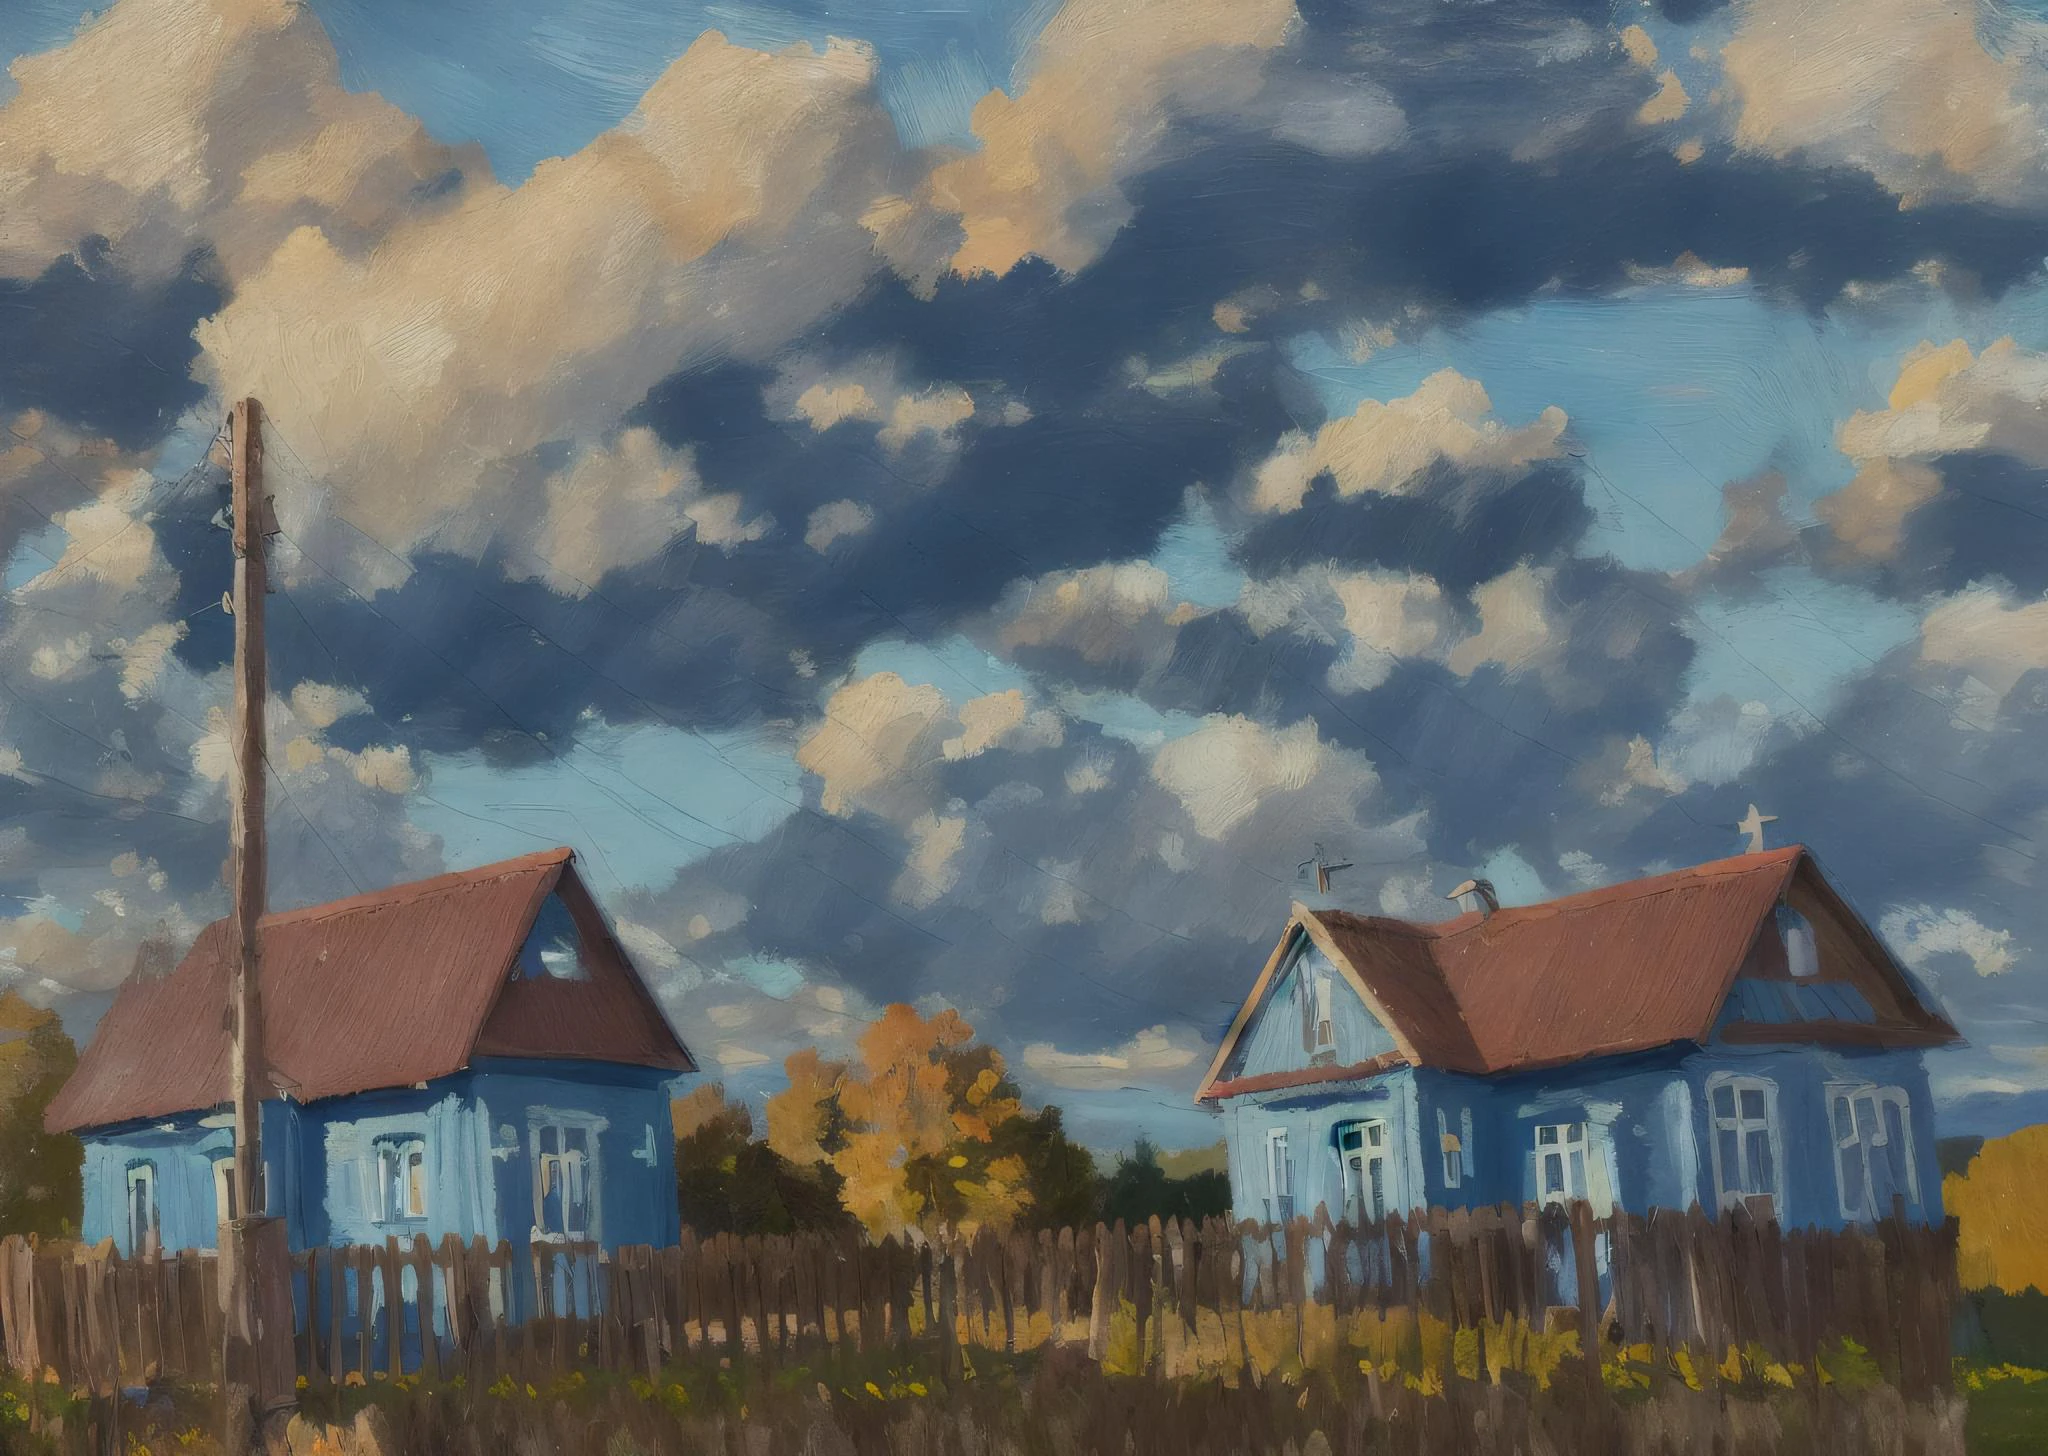 (mse 的绘画:1.5) 蓝色时刻, 落下, 田野中的房子，背景是天空和云彩, 有一条土路通向房子, 印象派绘画,